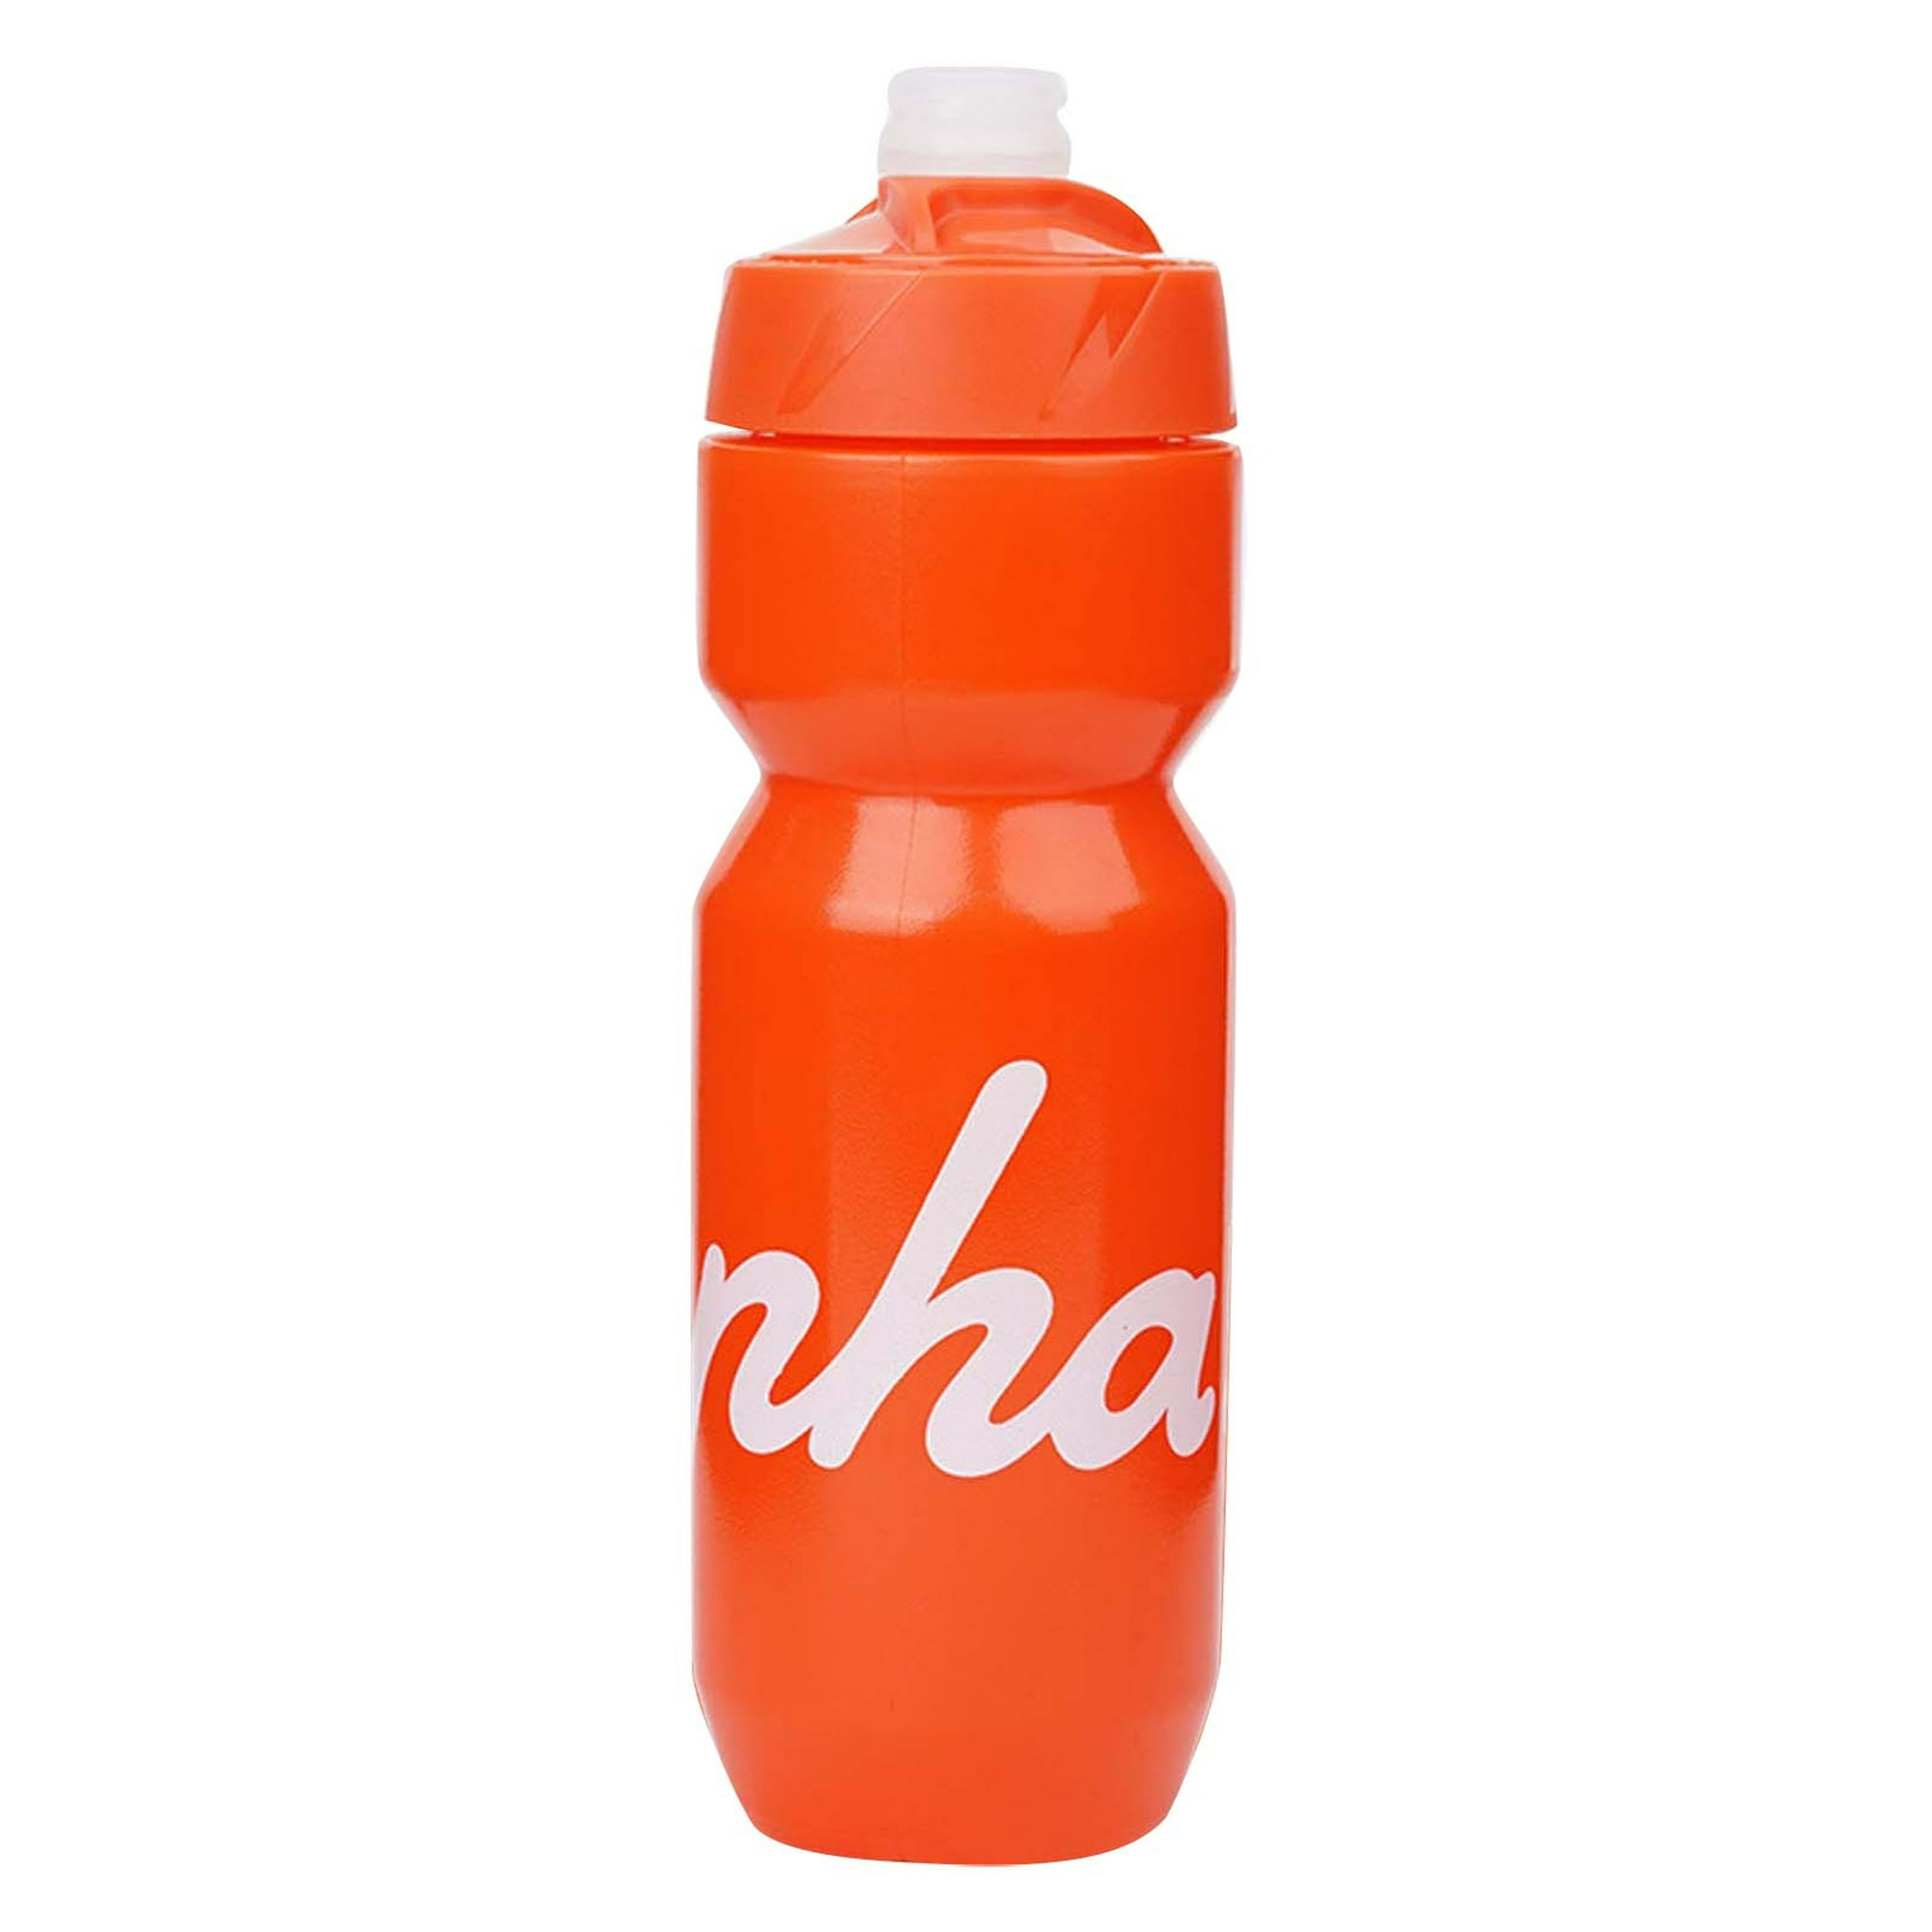 Botella de agua para bicicleta, taza de agua para hacer ejercicio, botella  de agua para bicicleta de montaña a prueba de fugas Wmkox8yii hjk6228